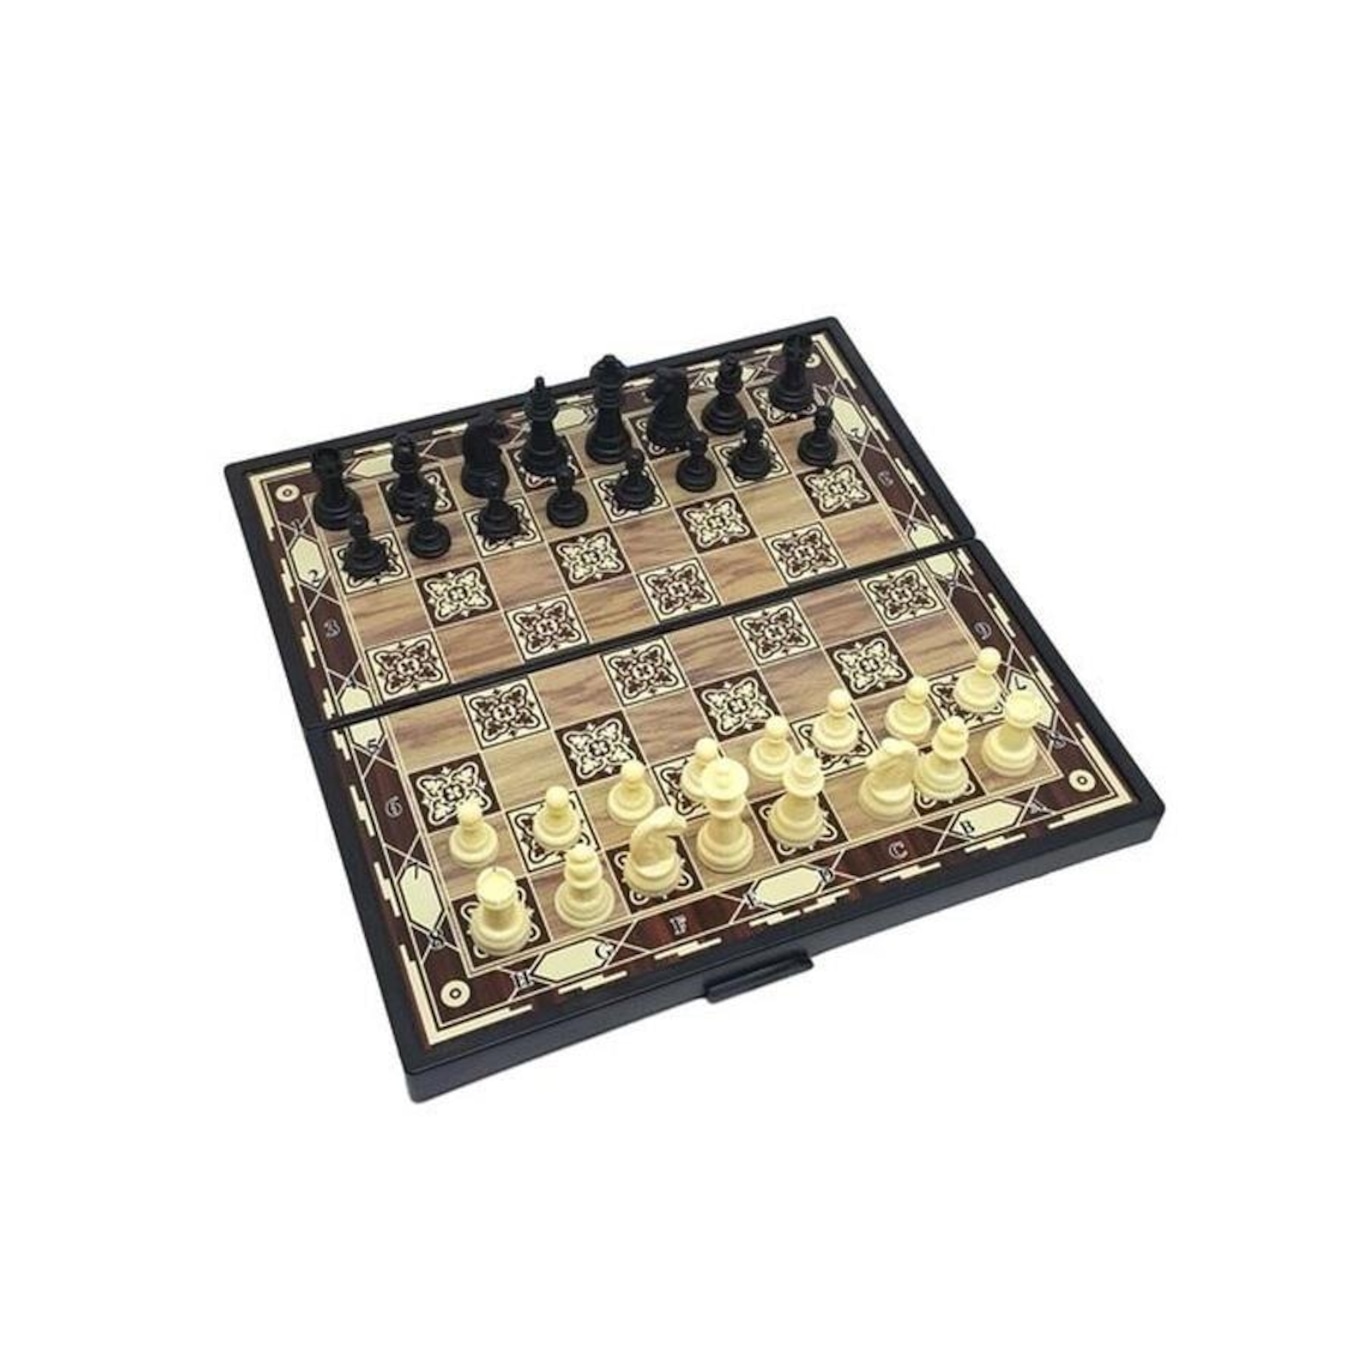 Tabuleiro de xadrez magnético Board defina as crianças a jogarem